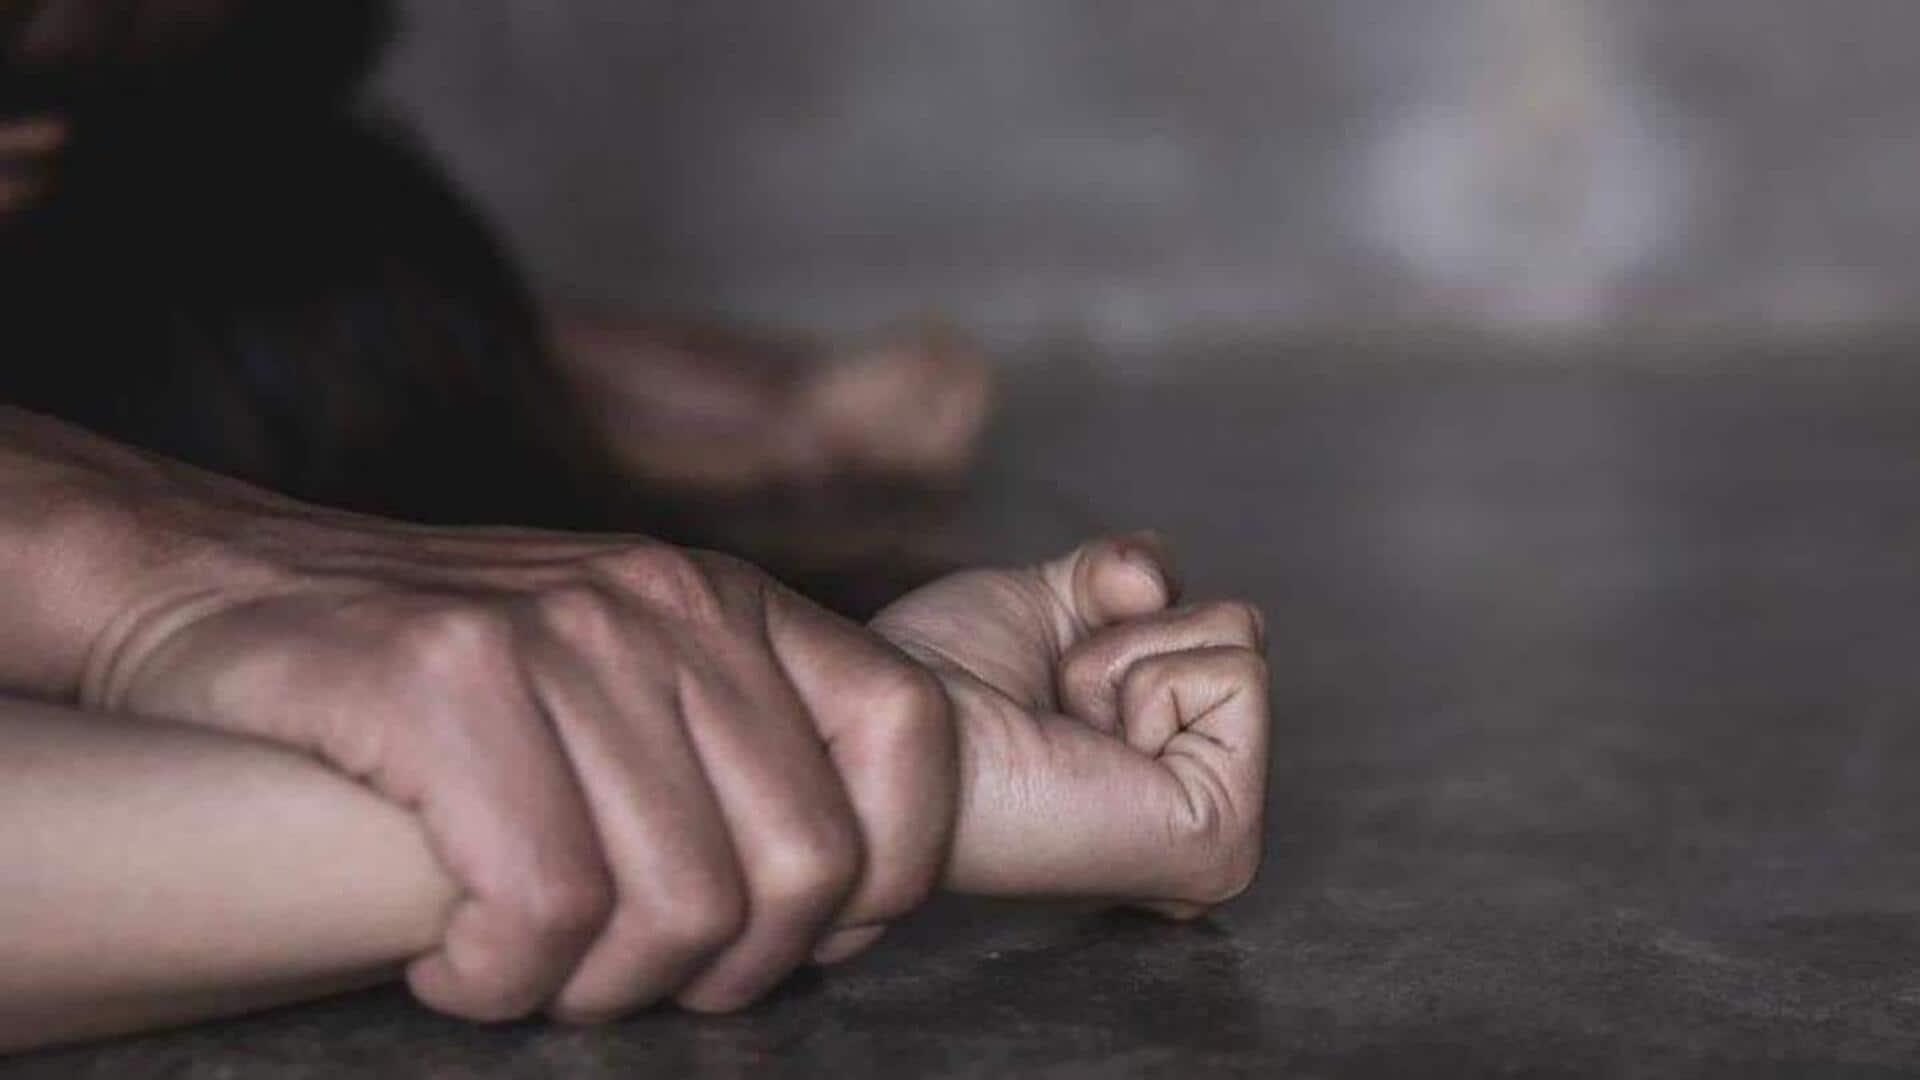 ஹைதராபாத்தில் ஜூஸ்-இல் மயக்கமருந்து கலந்து பலாத்காரம்: ரியல் எஸ்டேட் விற்பனையாளர்கள் 2 பேர் கைது